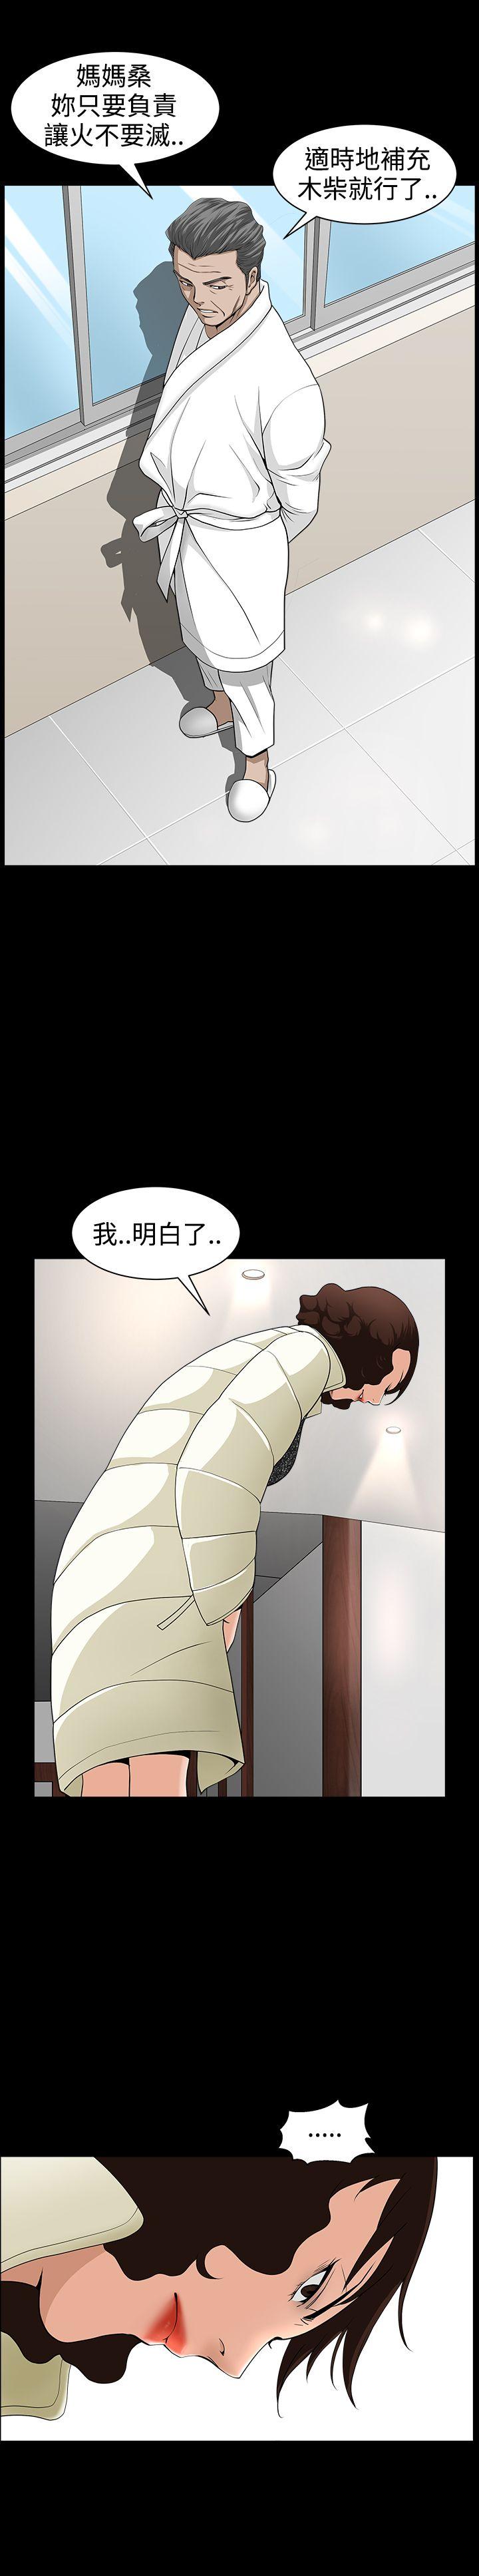 韩国污漫画 人妻性解放3:粗糙的手 第40话 22